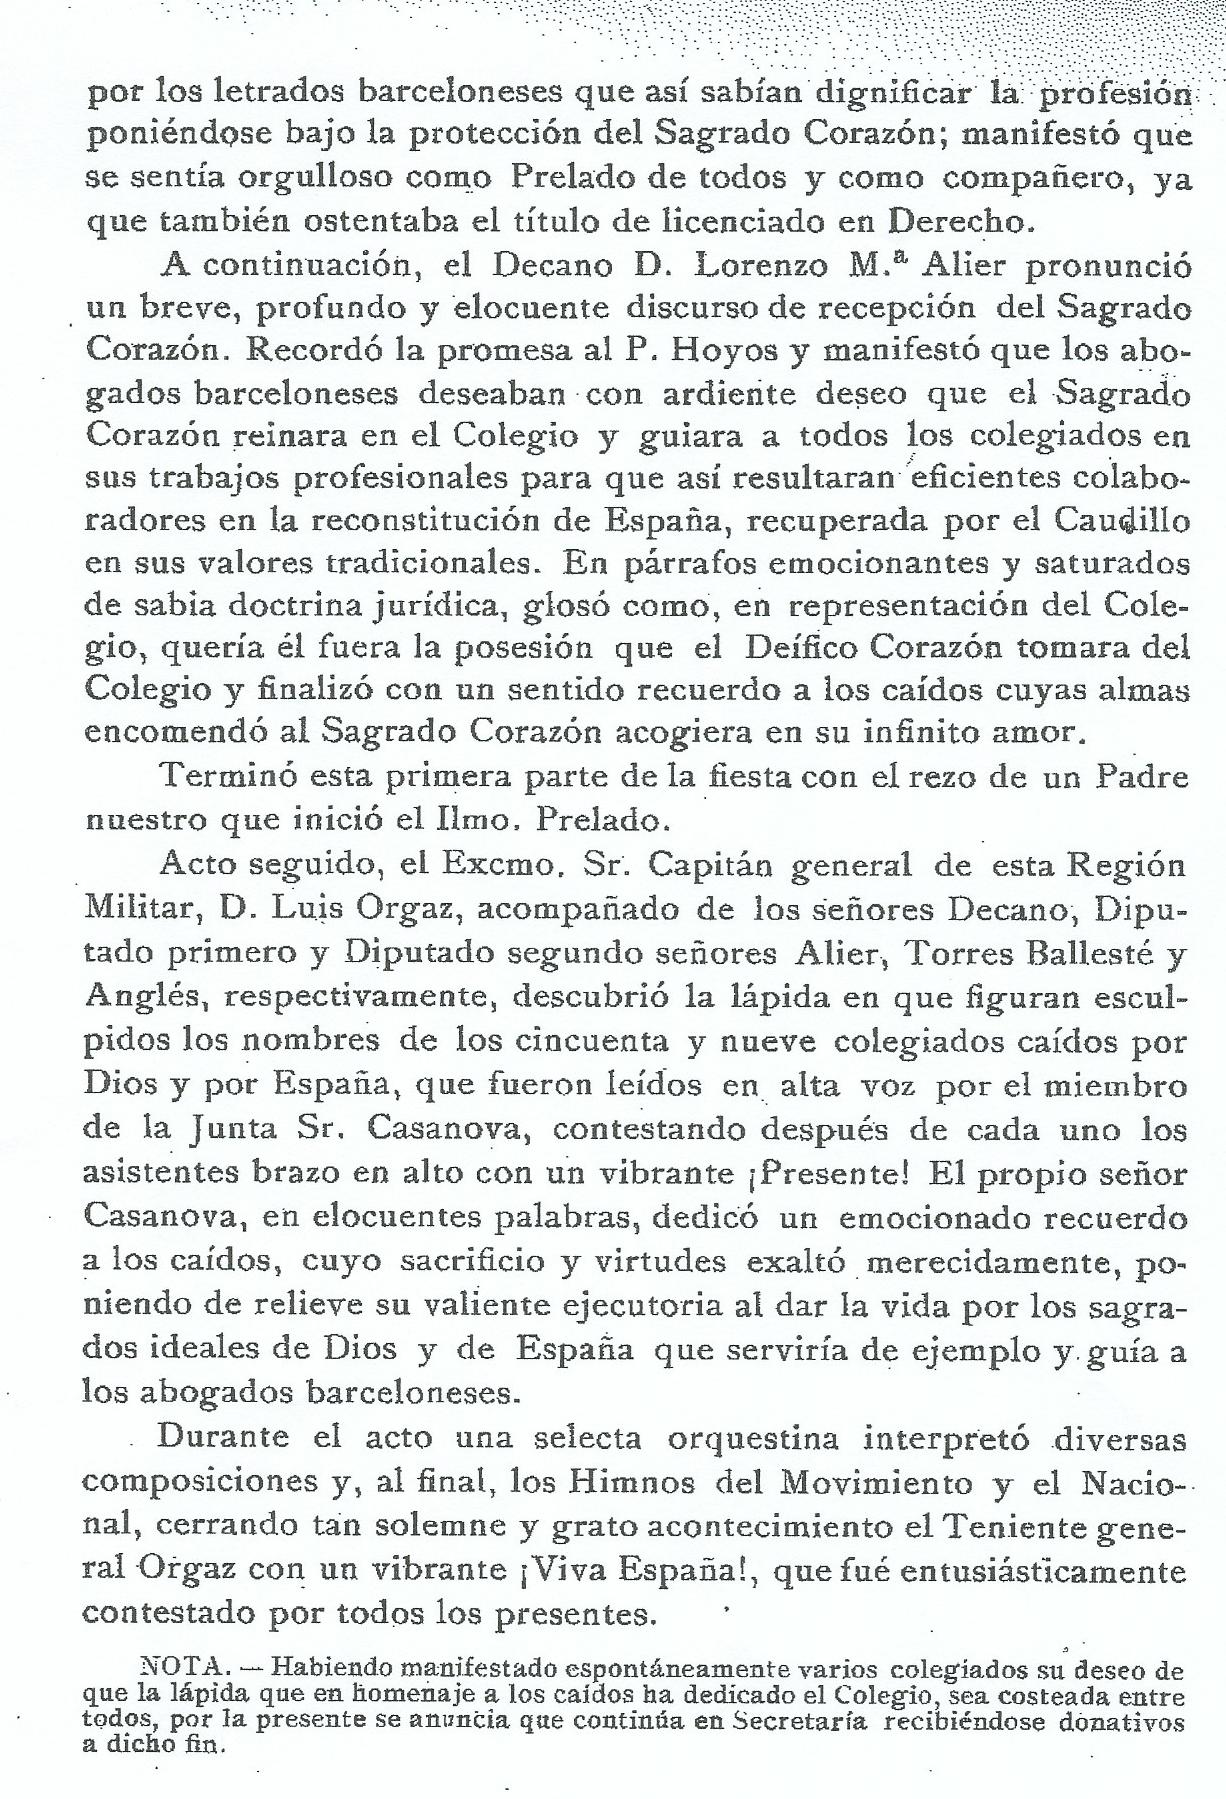 Circular del Colegio de abogados de Barcelona, 1940, segunda página